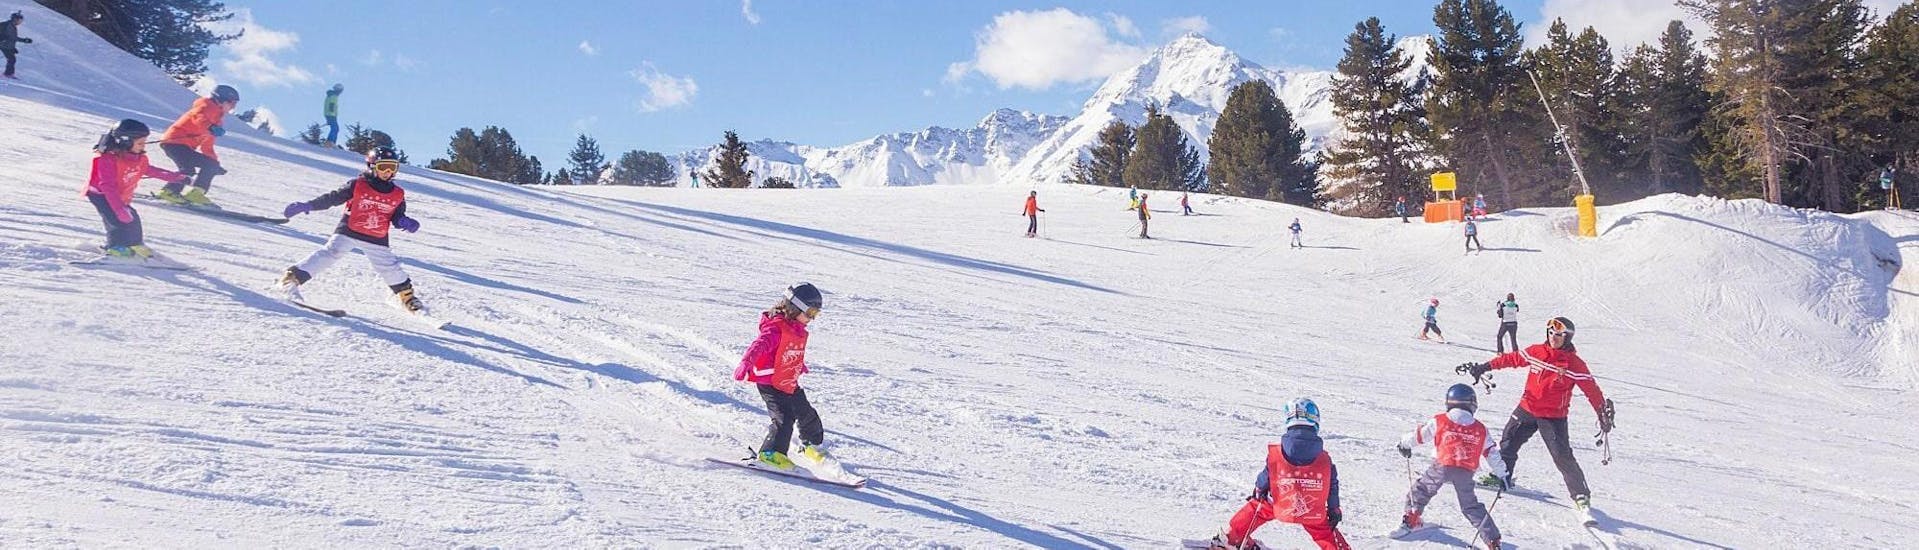 Der Skilehrer der Sertorelli Skischule Bormio ist während des Kinderskikurses (4-12 Jahre) für Fortgeschrittene  mit den Teilnehmern auf der Piste - ganztägig.